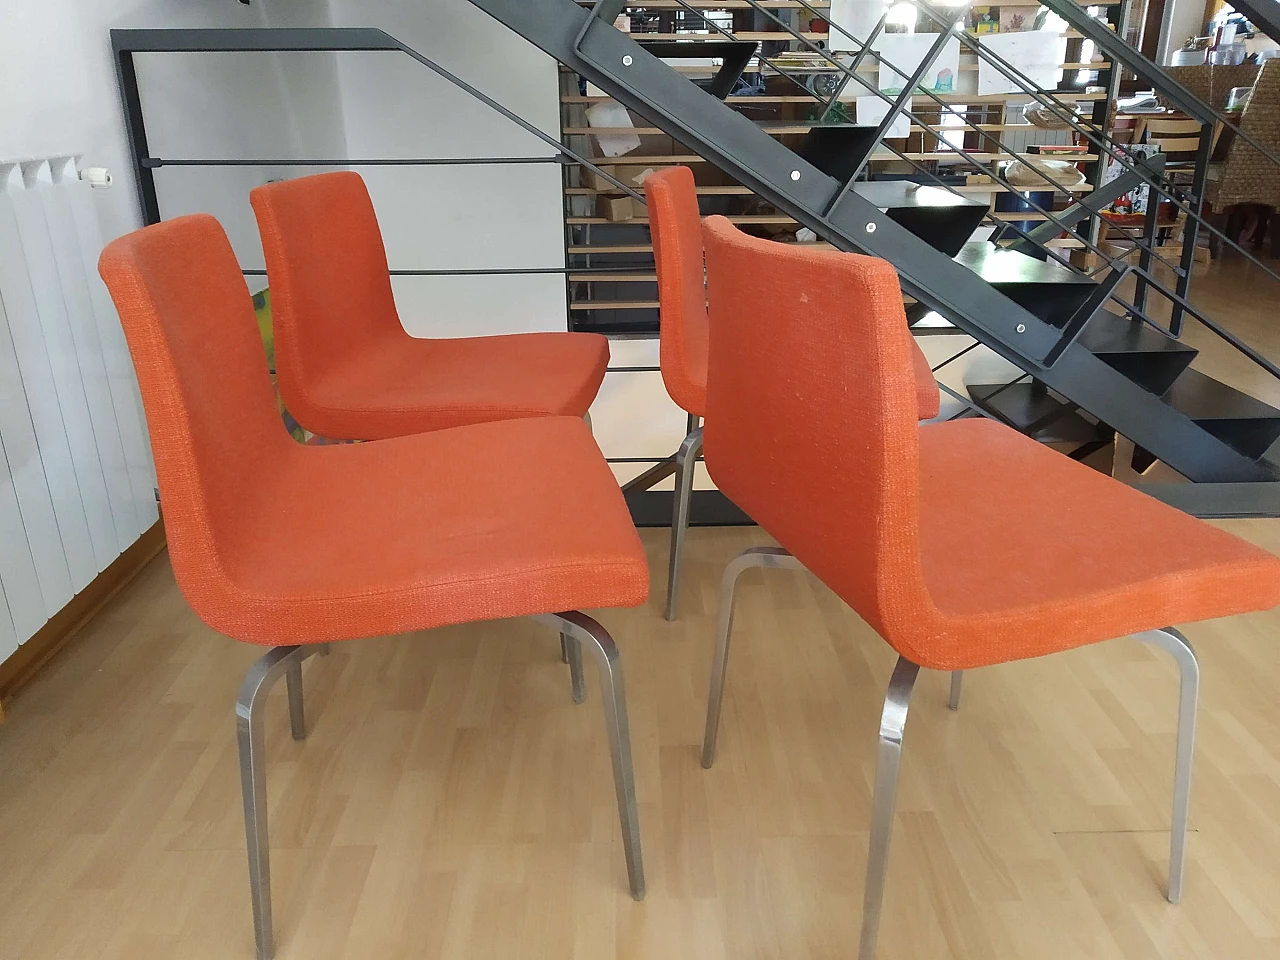 4 Hella Chairs by Mauro Lipparini for MisuraEmme 1477151